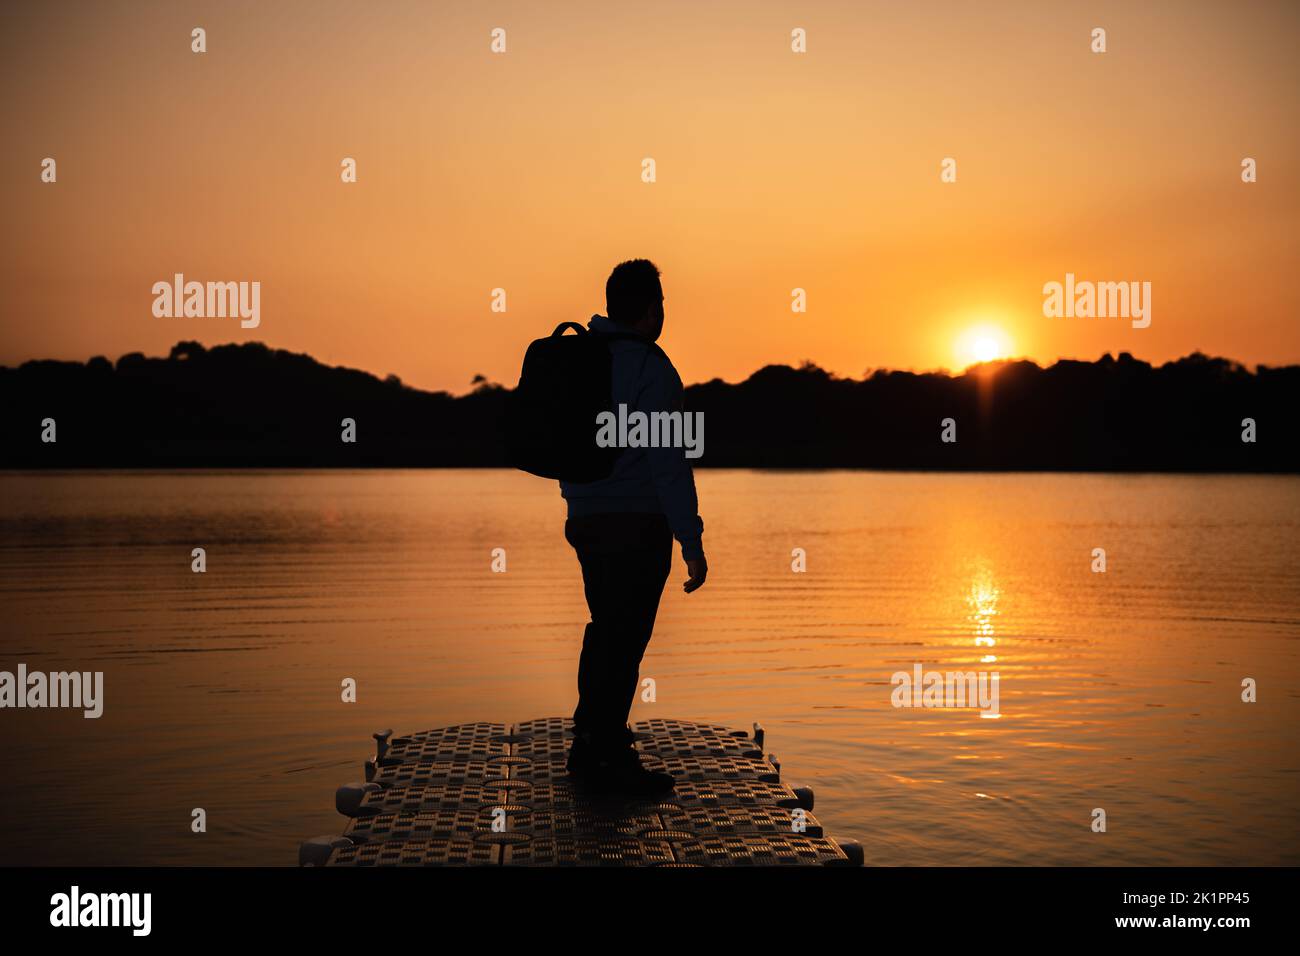 Une silhouette d'une personne avec un sac à dos sur une jetée dans le lac au coucher du soleil Banque D'Images